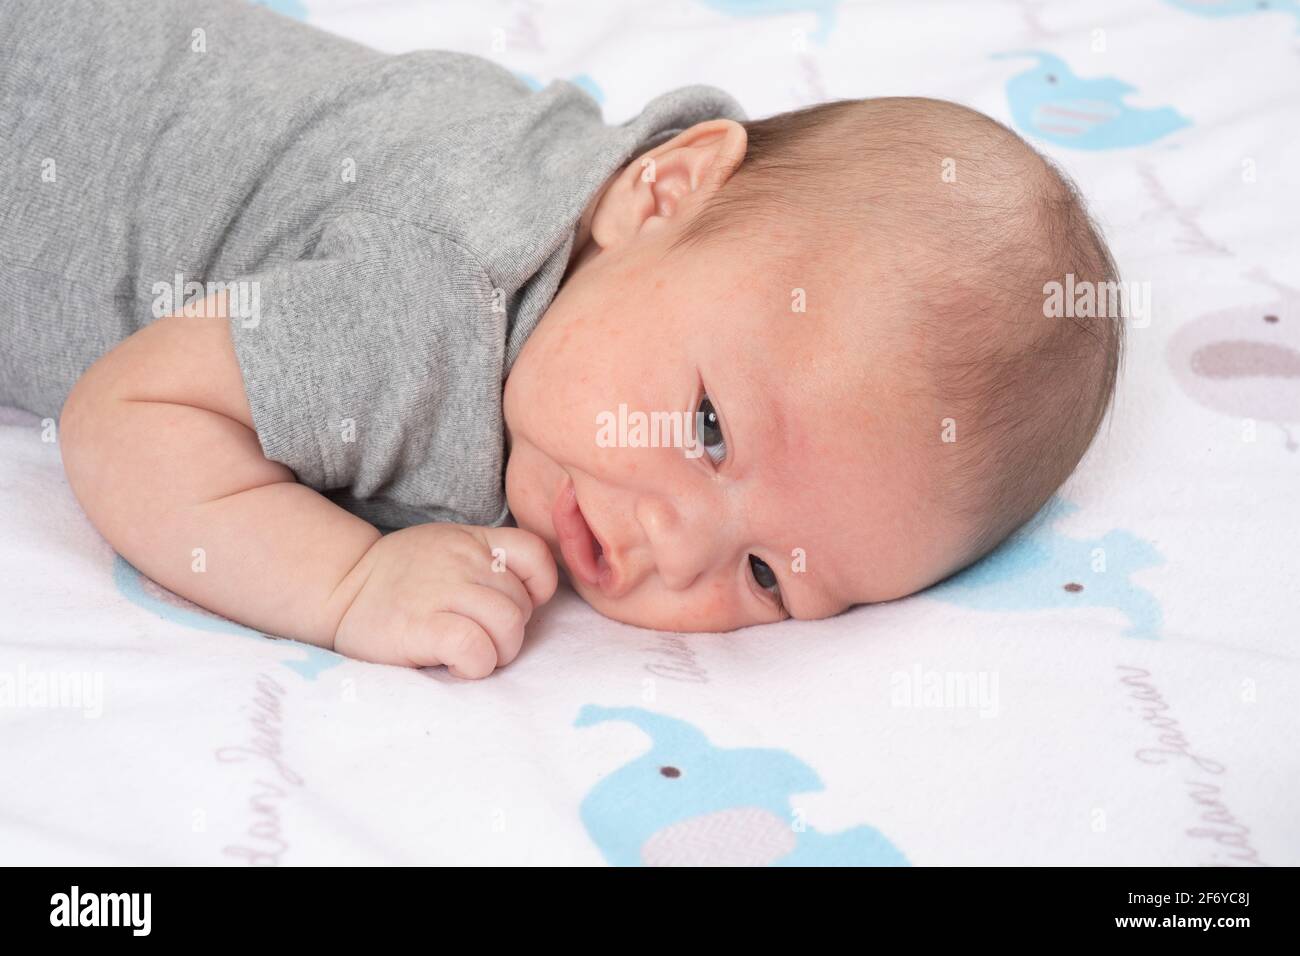 Neugeborener Baby Junge 7 Wochen alt wachsam Nahaufnahme auf Magen Kopf zur Seite gedreht Stockfoto